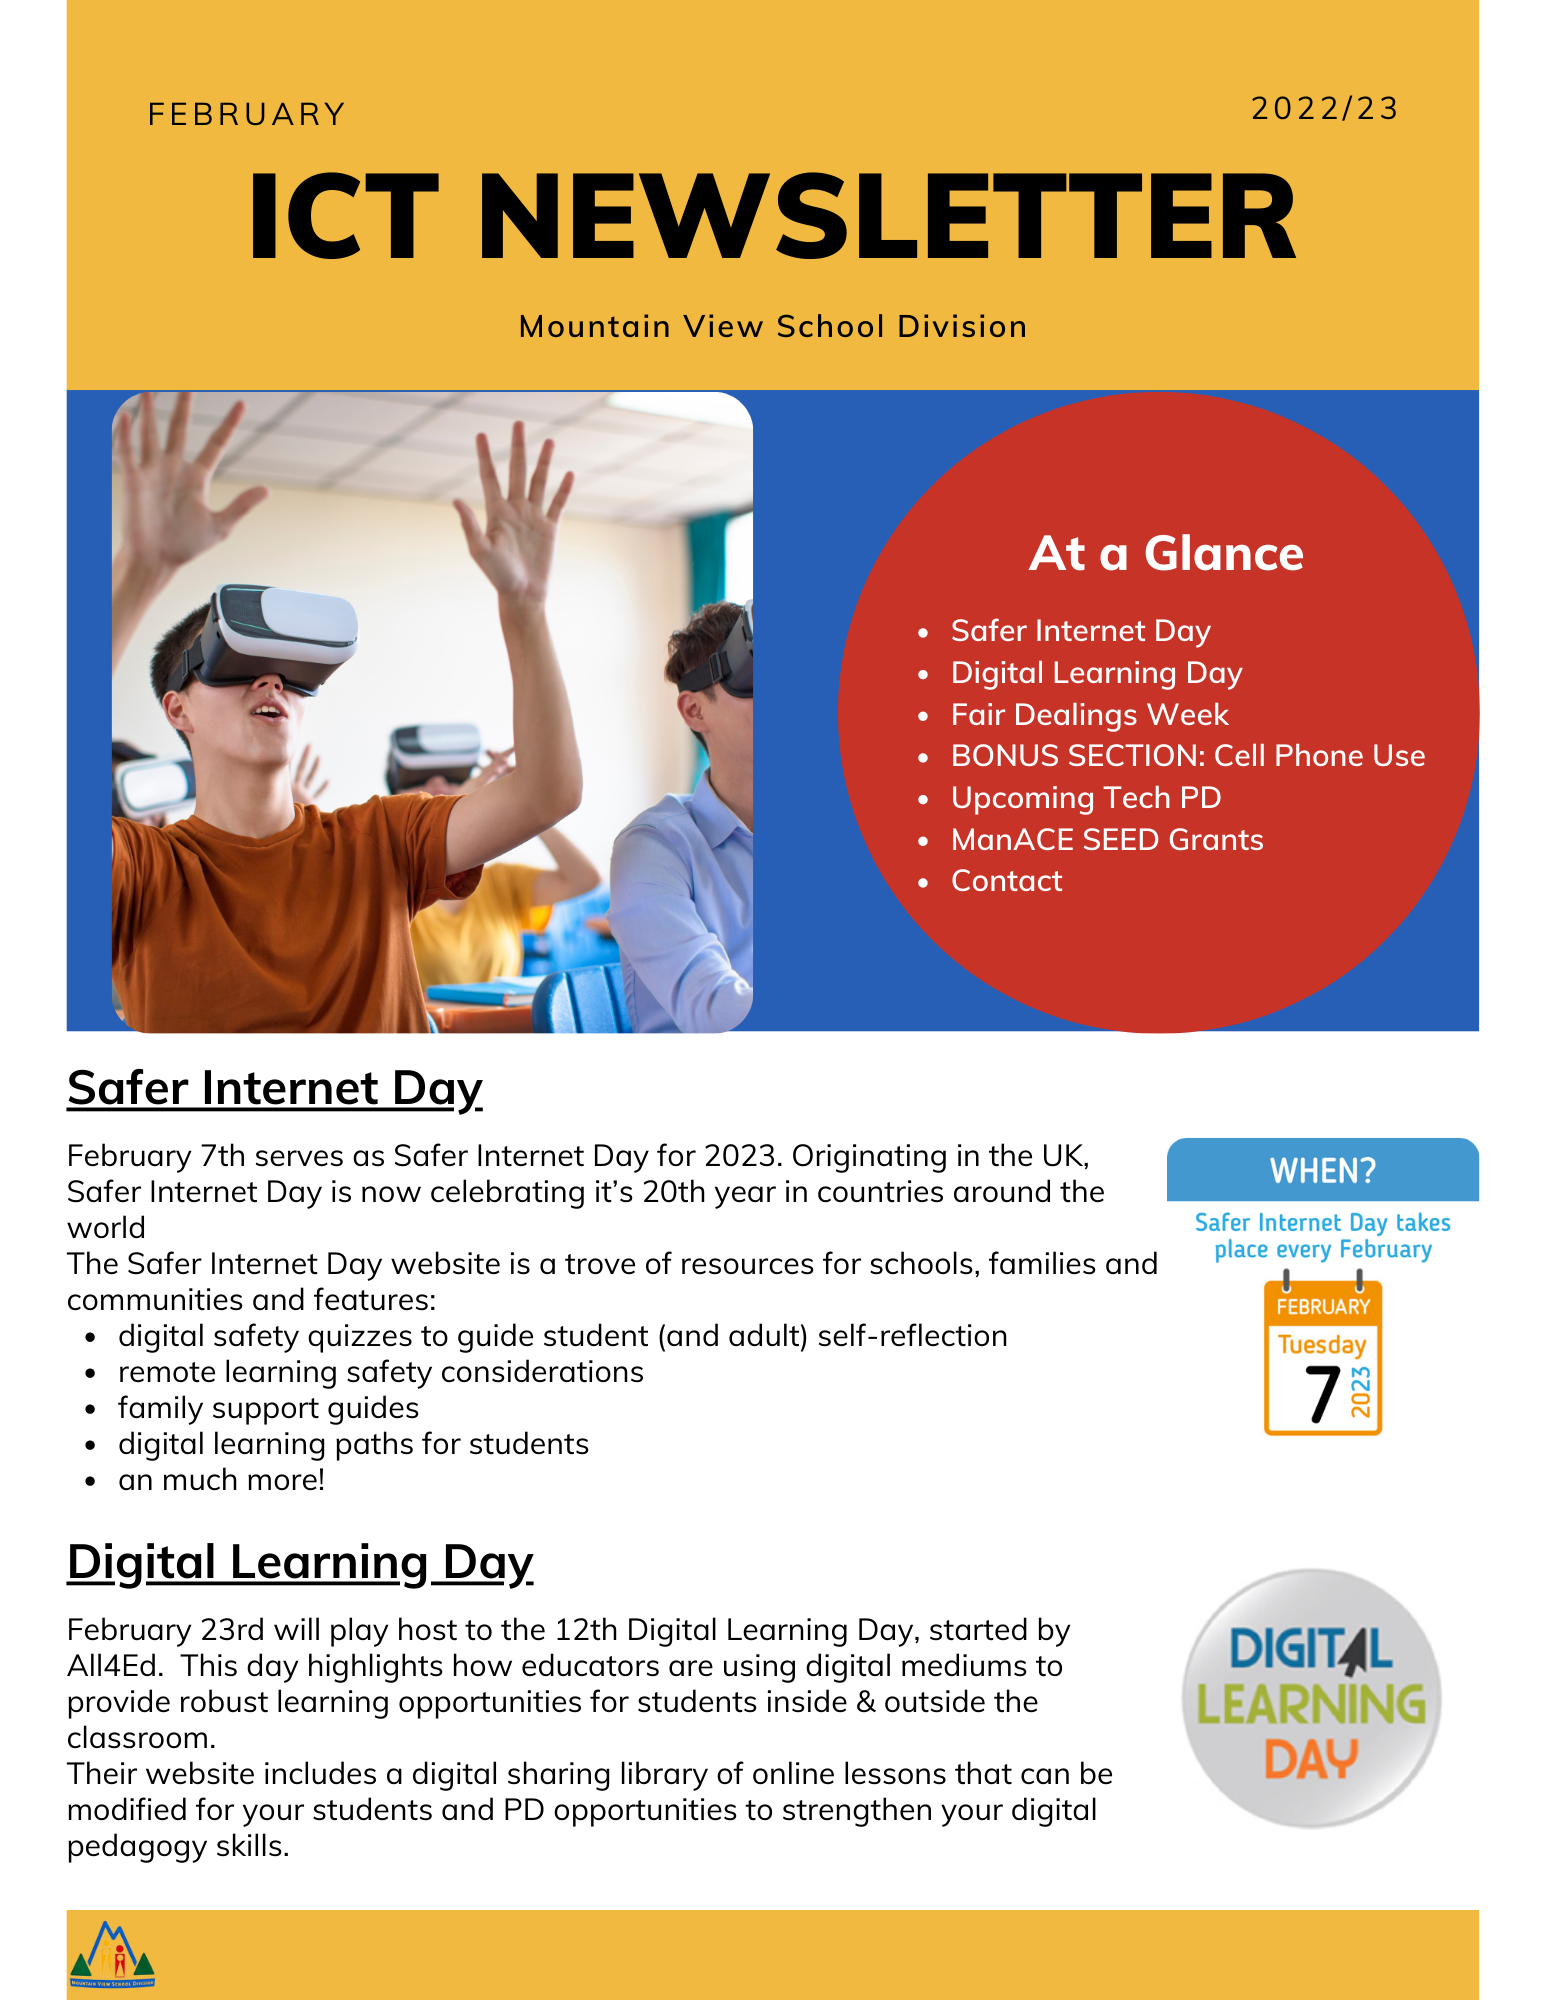 February ICT Newsletter